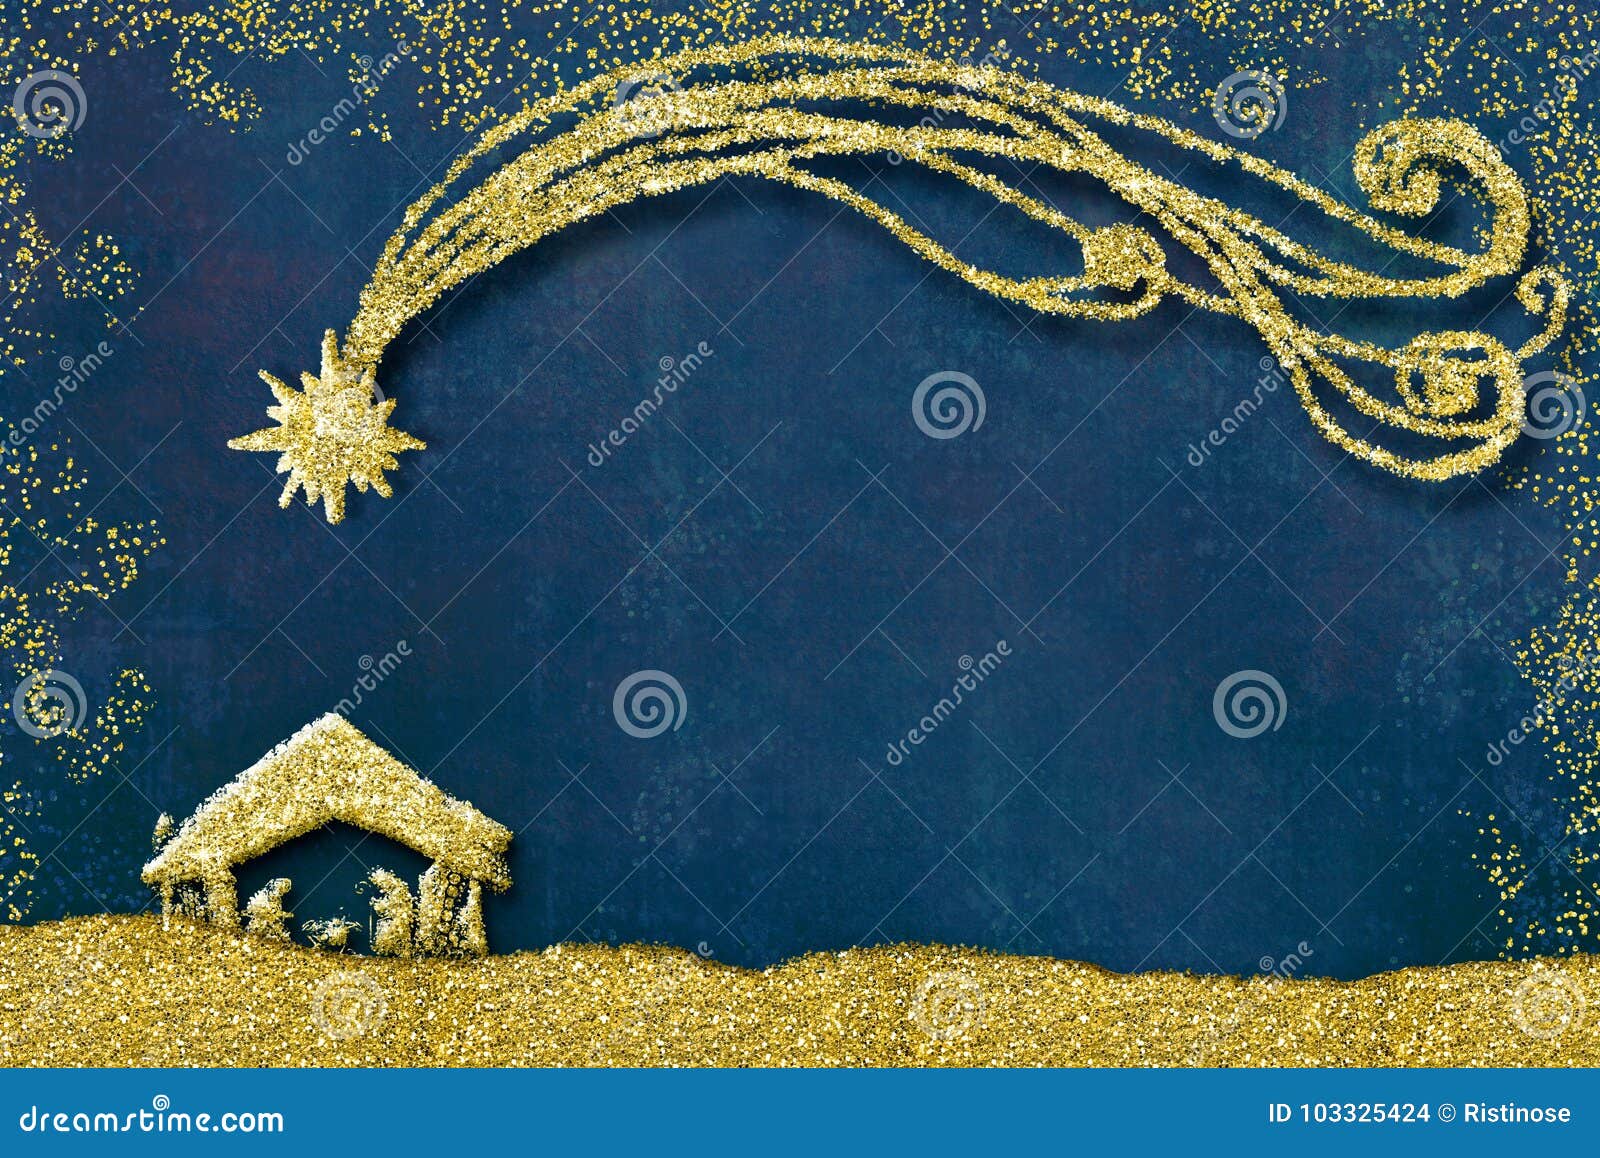 Sfondi Natalizi Nativita.Cartoline D Auguri Di Scena Di Nativita Di Natale Illustrazione Di Stock Illustrazione Di Mary Santo 103325424